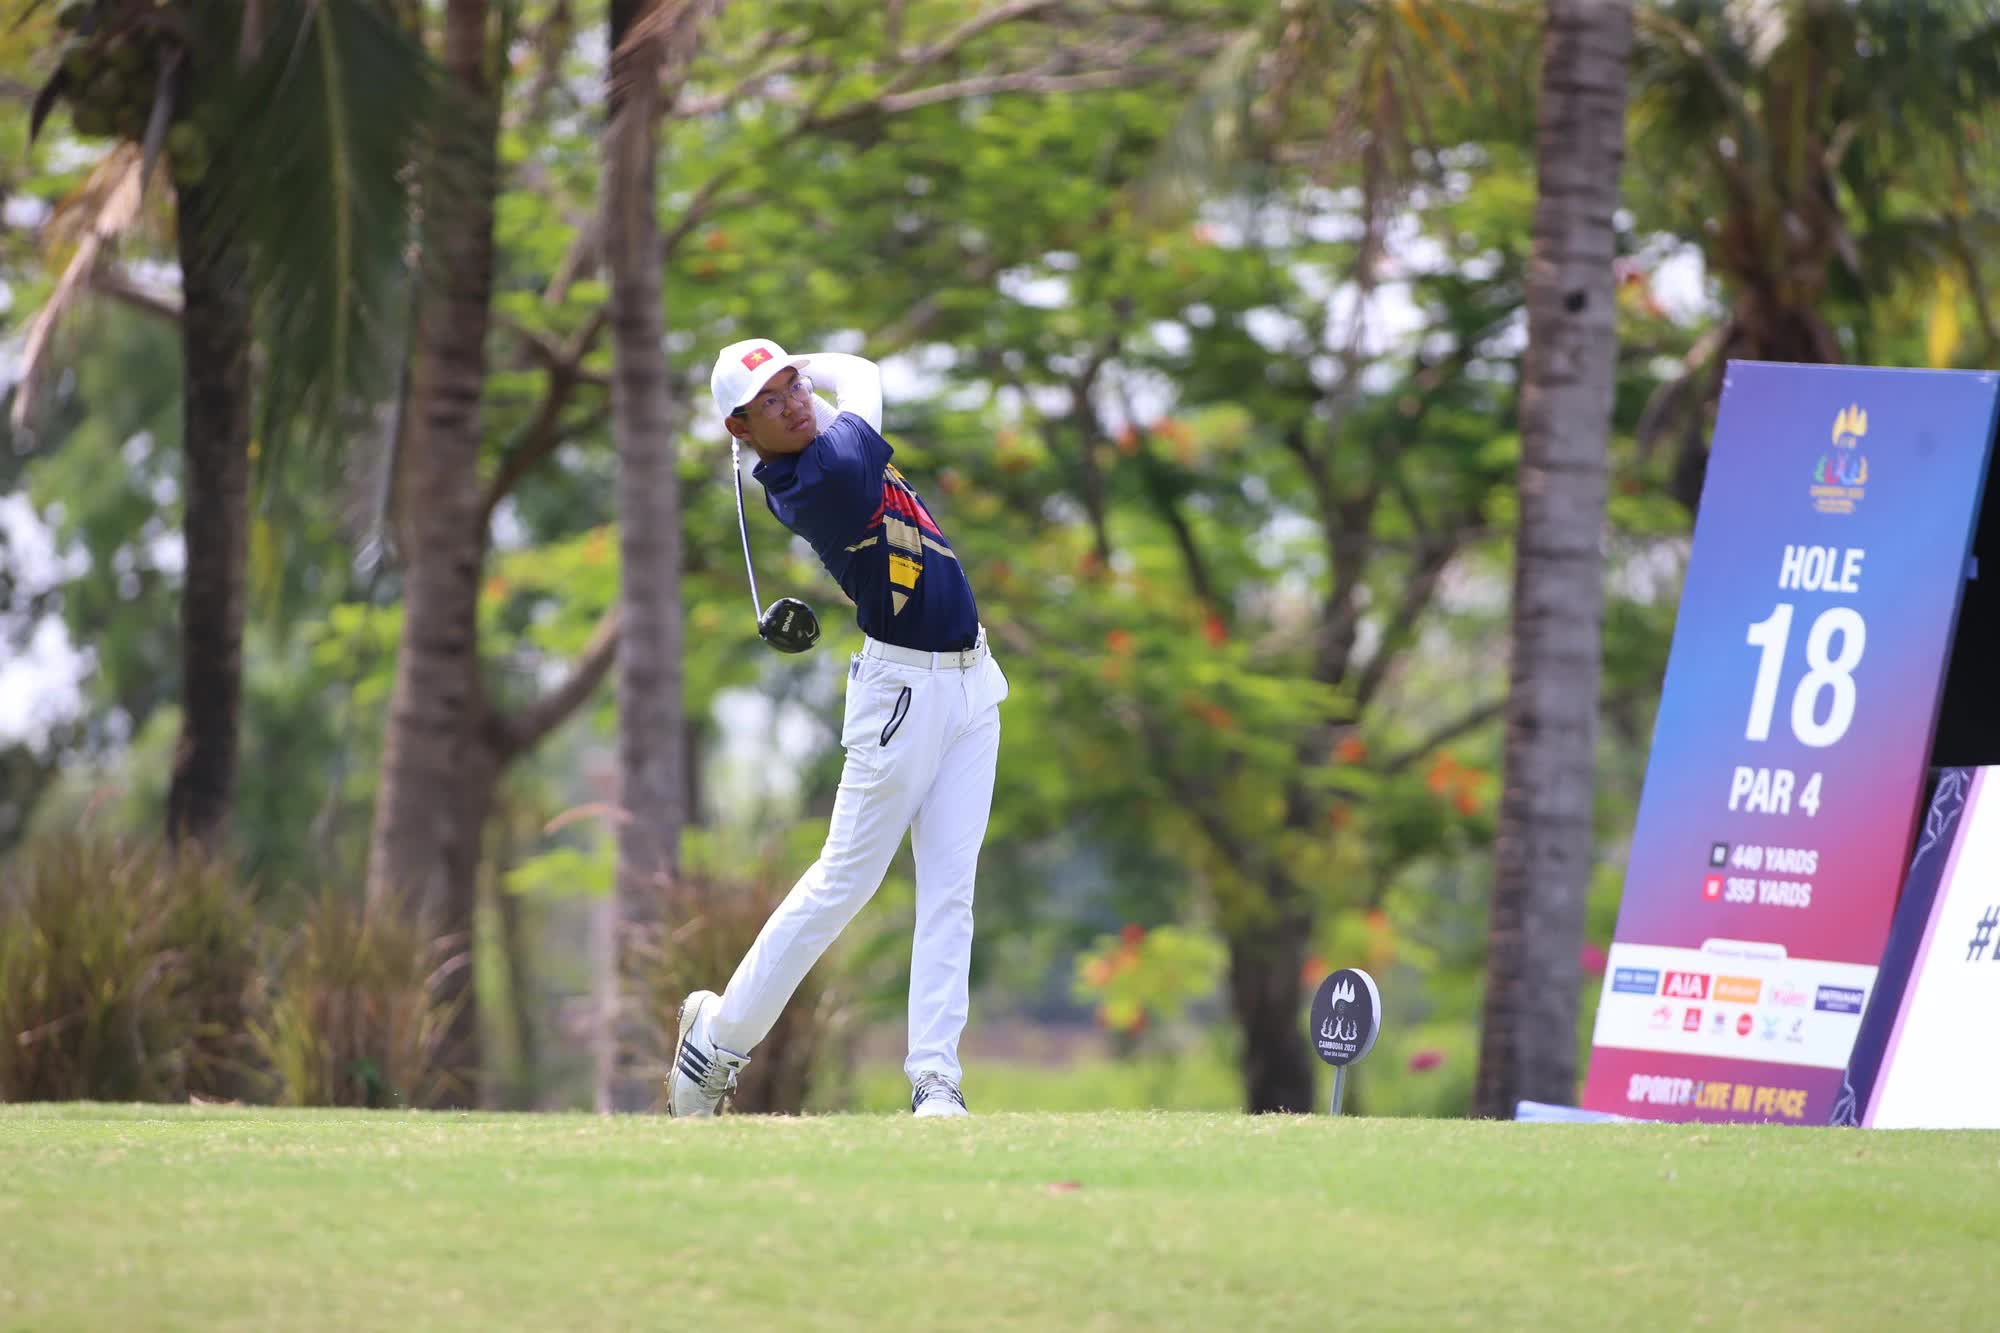 VĐV 15 tuổi Lê Khánh Hưng thi đấu xuất sắc, giành HCV SEA Games lịch sử cho golf Việt Nam - Ảnh 1.